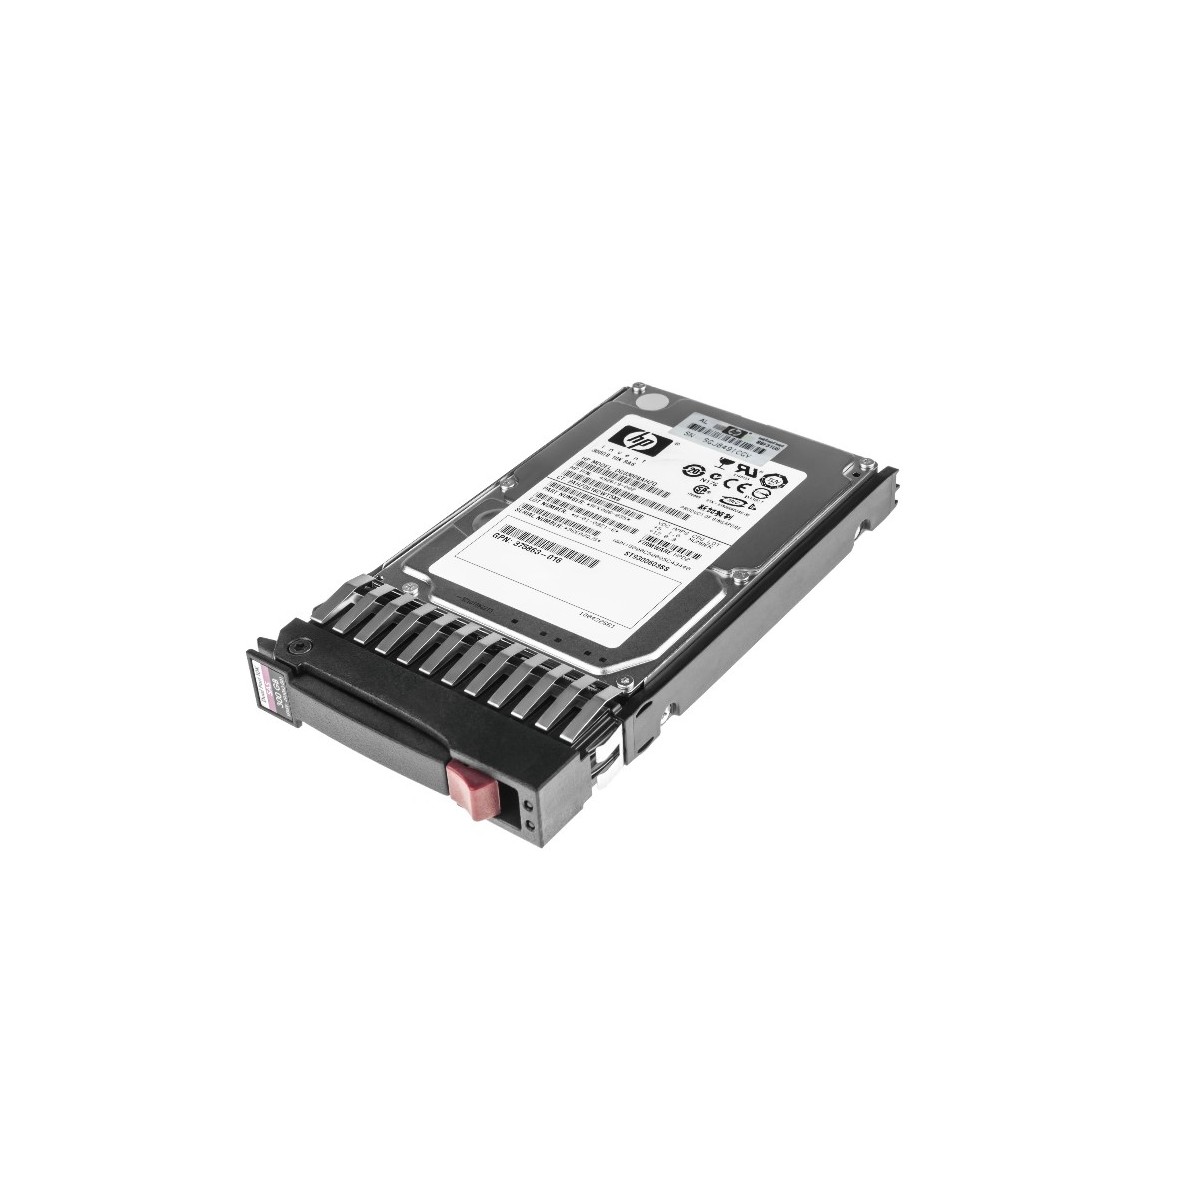 DYSK HP 300GB SAS 10K 6G 2,5 492619-002